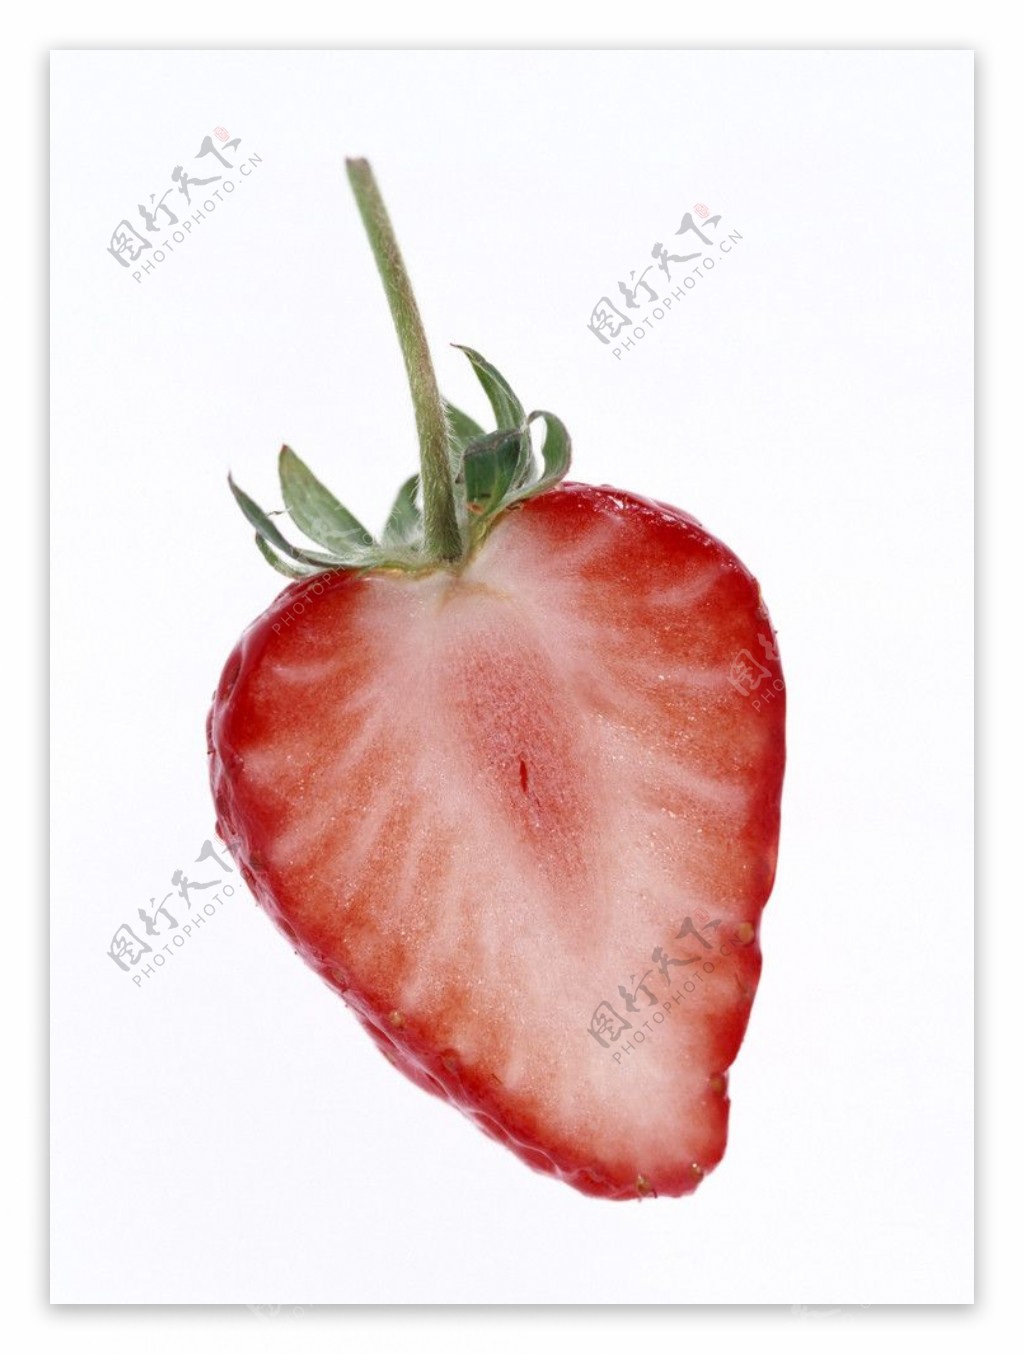 水果草莓经典水果高清晰摄影